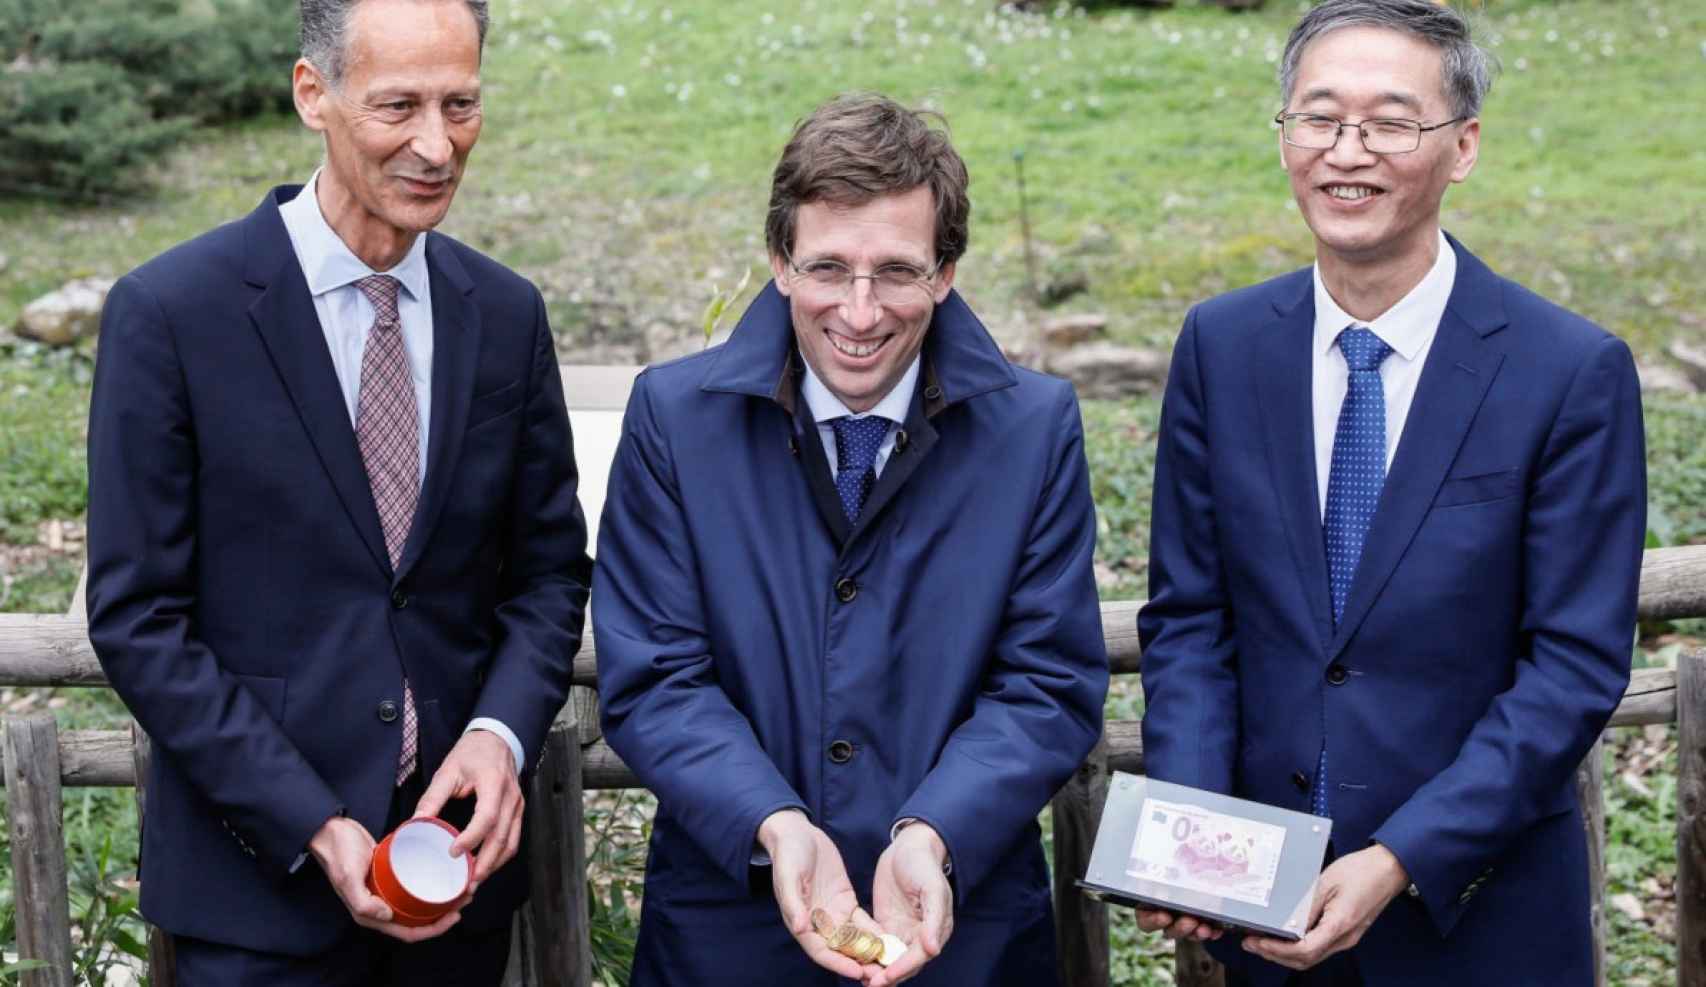 El alcalde, José Luis Martínez-Almeida, sujeta las monedas chinas acompañado por el embajador de la República de China, Yao Jing (derecha) y el consejero delegado del Grupo Parques Reunidos, Pascal Ferracci (izquierda).